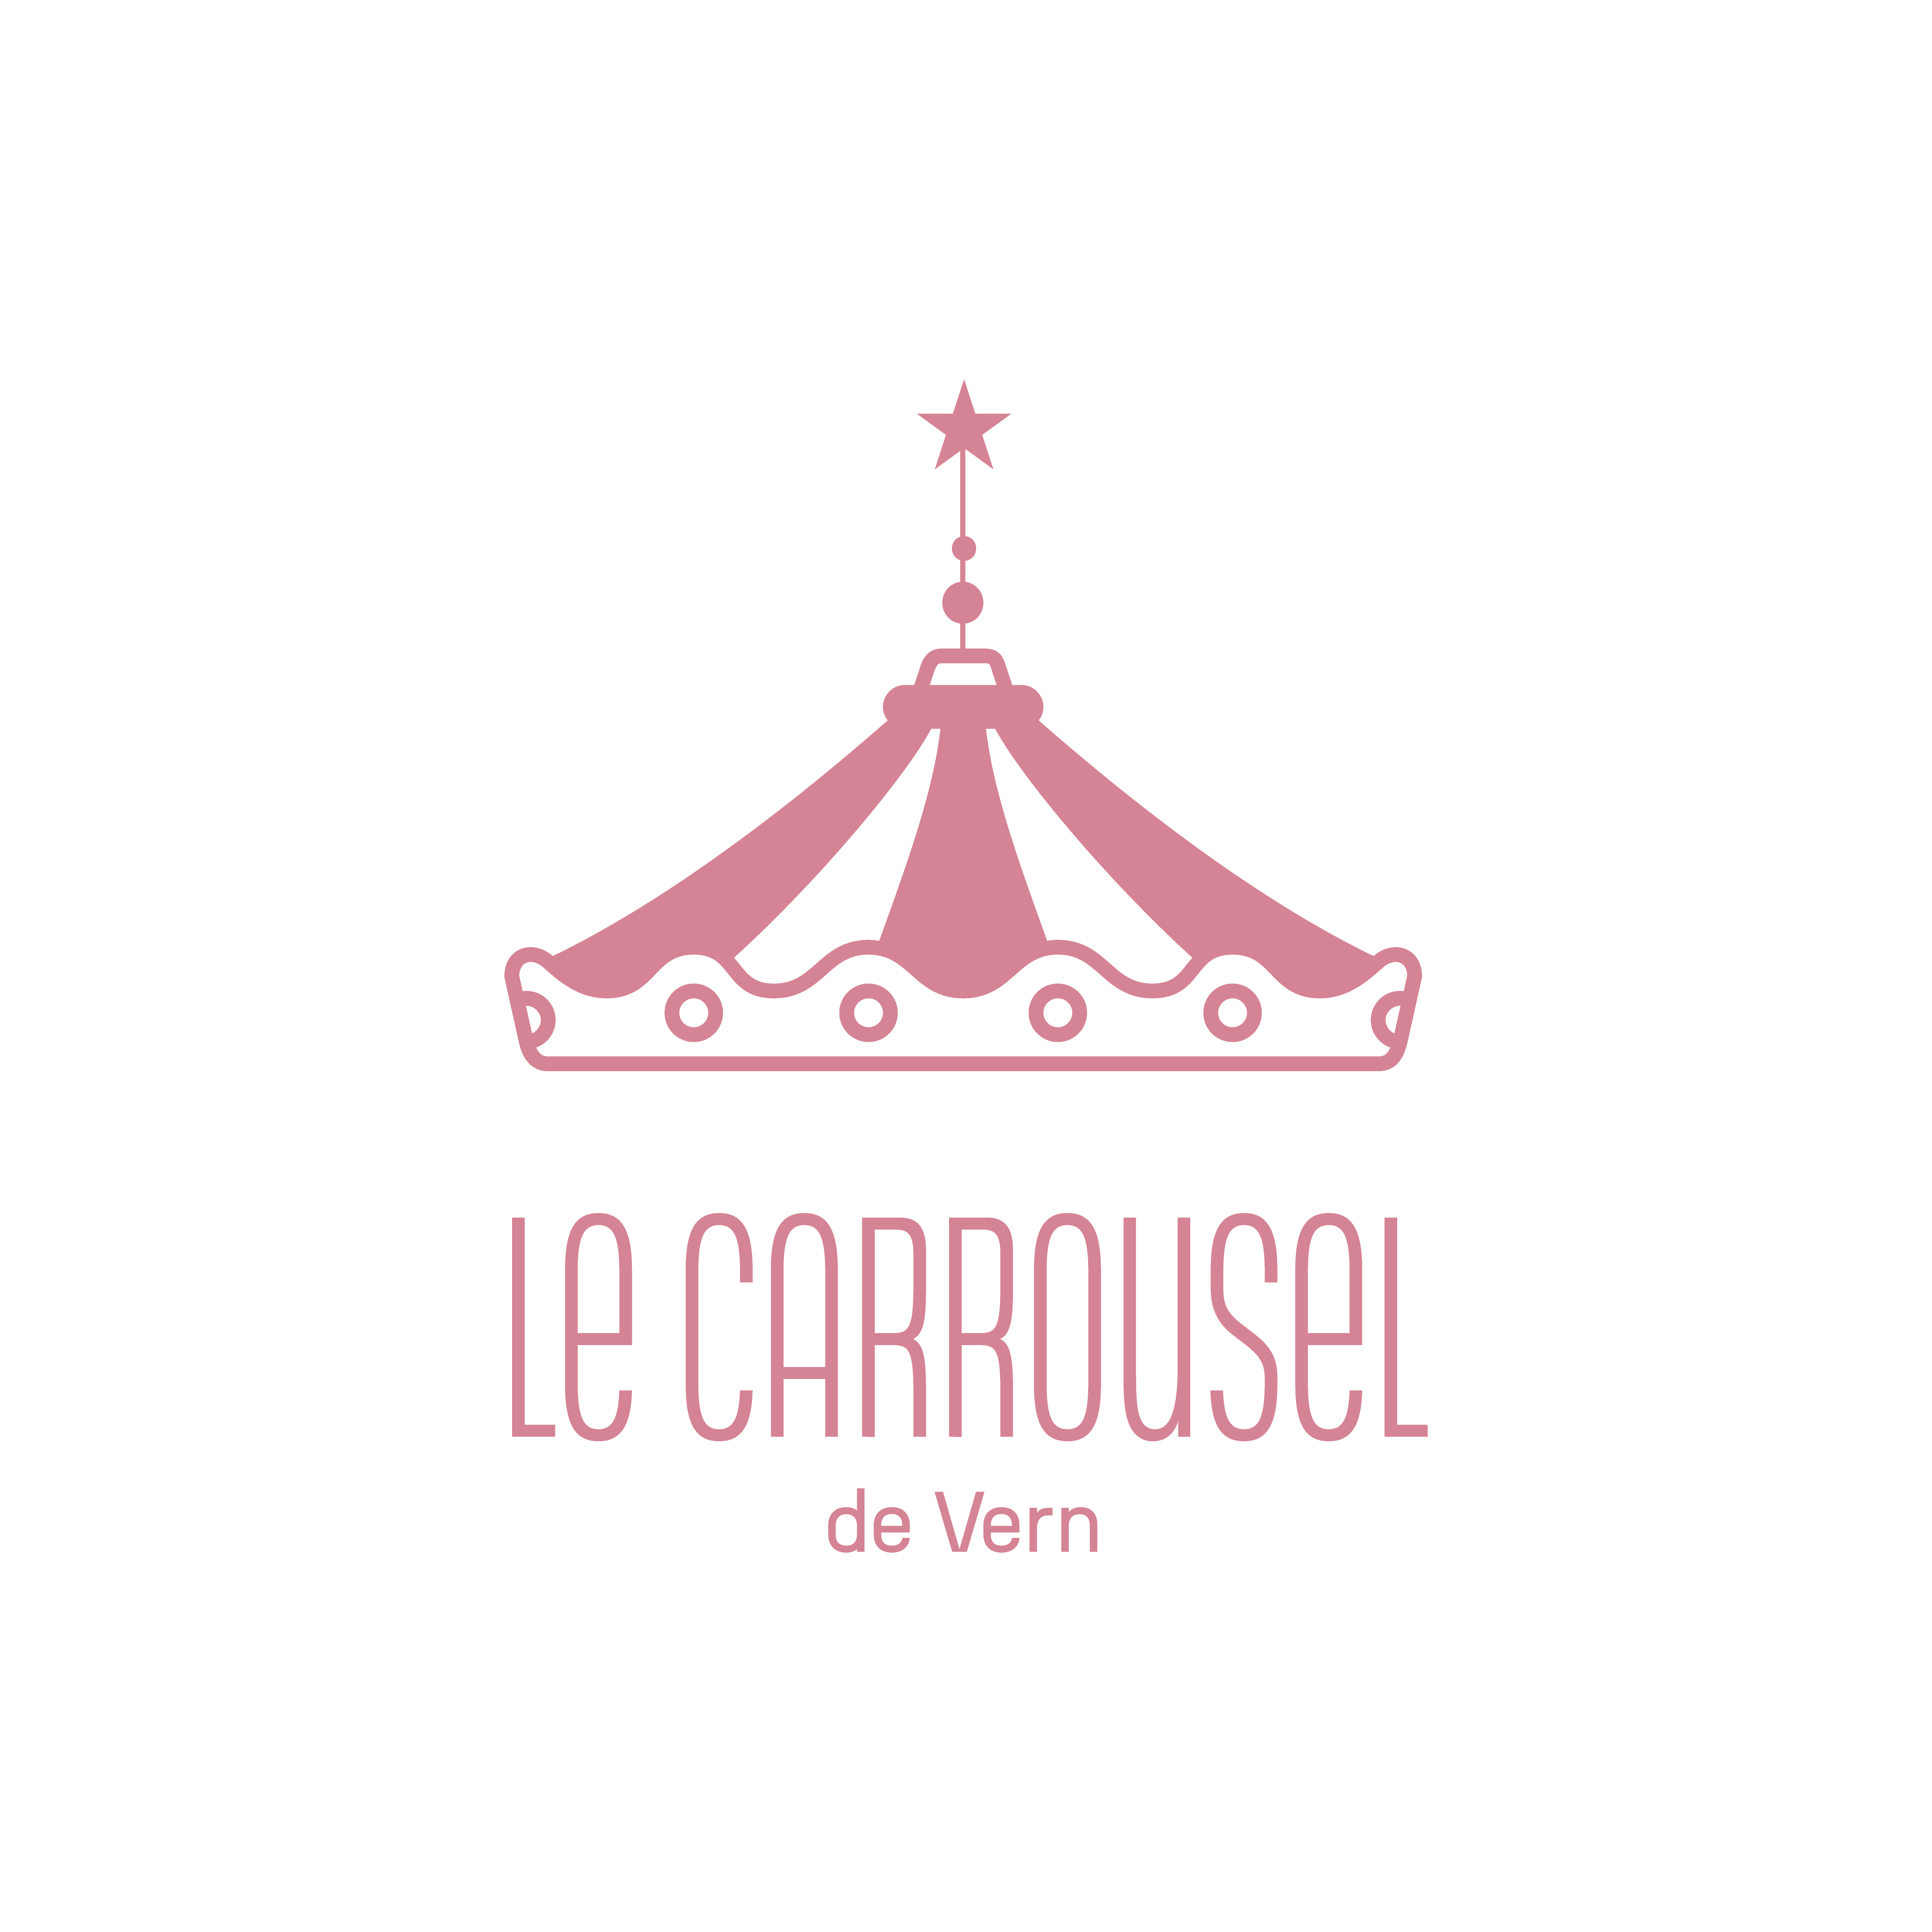 Carrousel de Vern